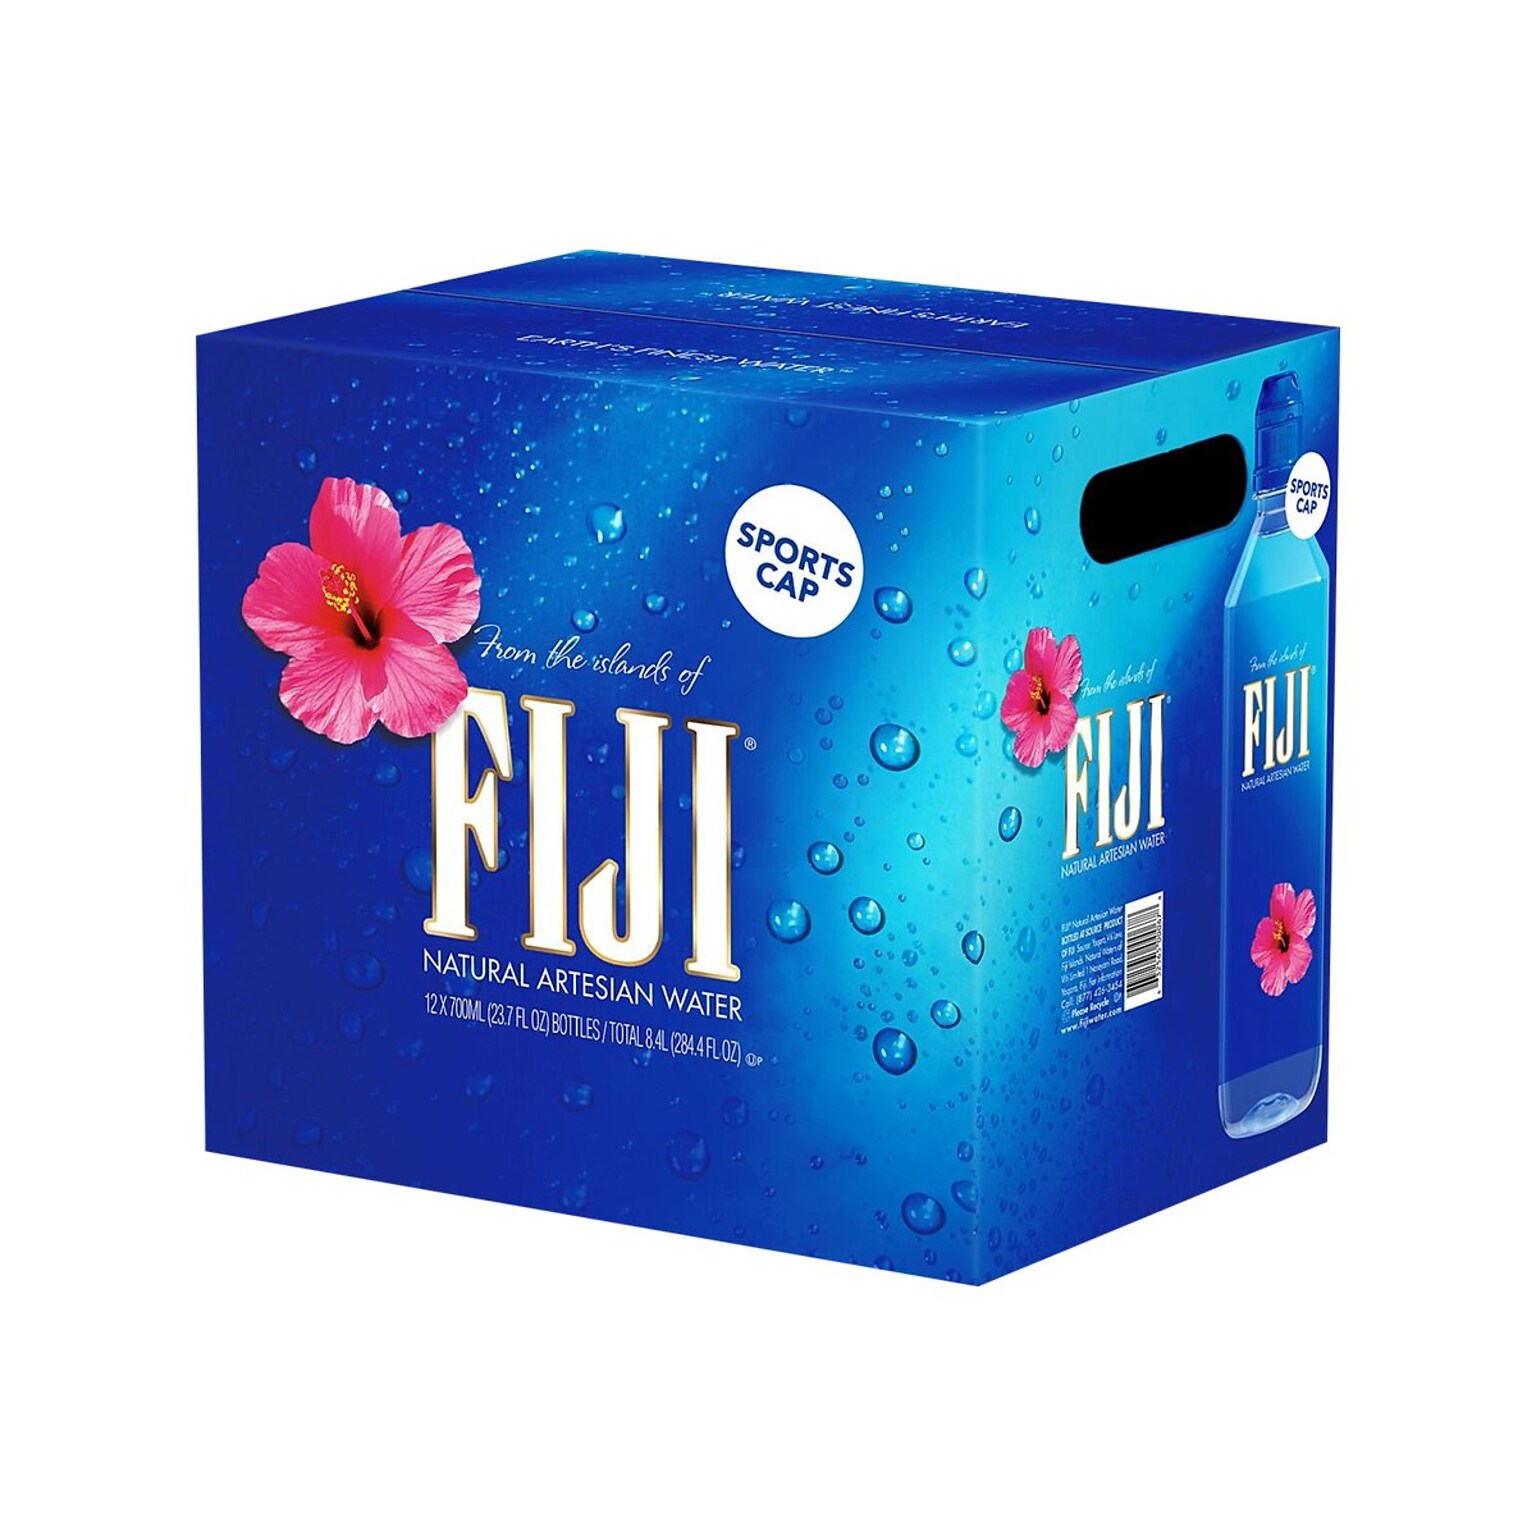 FIJI Water, 23.67 Fl. Oz., 6 Bottles/Pack, 2 Packs/Carton (00067)